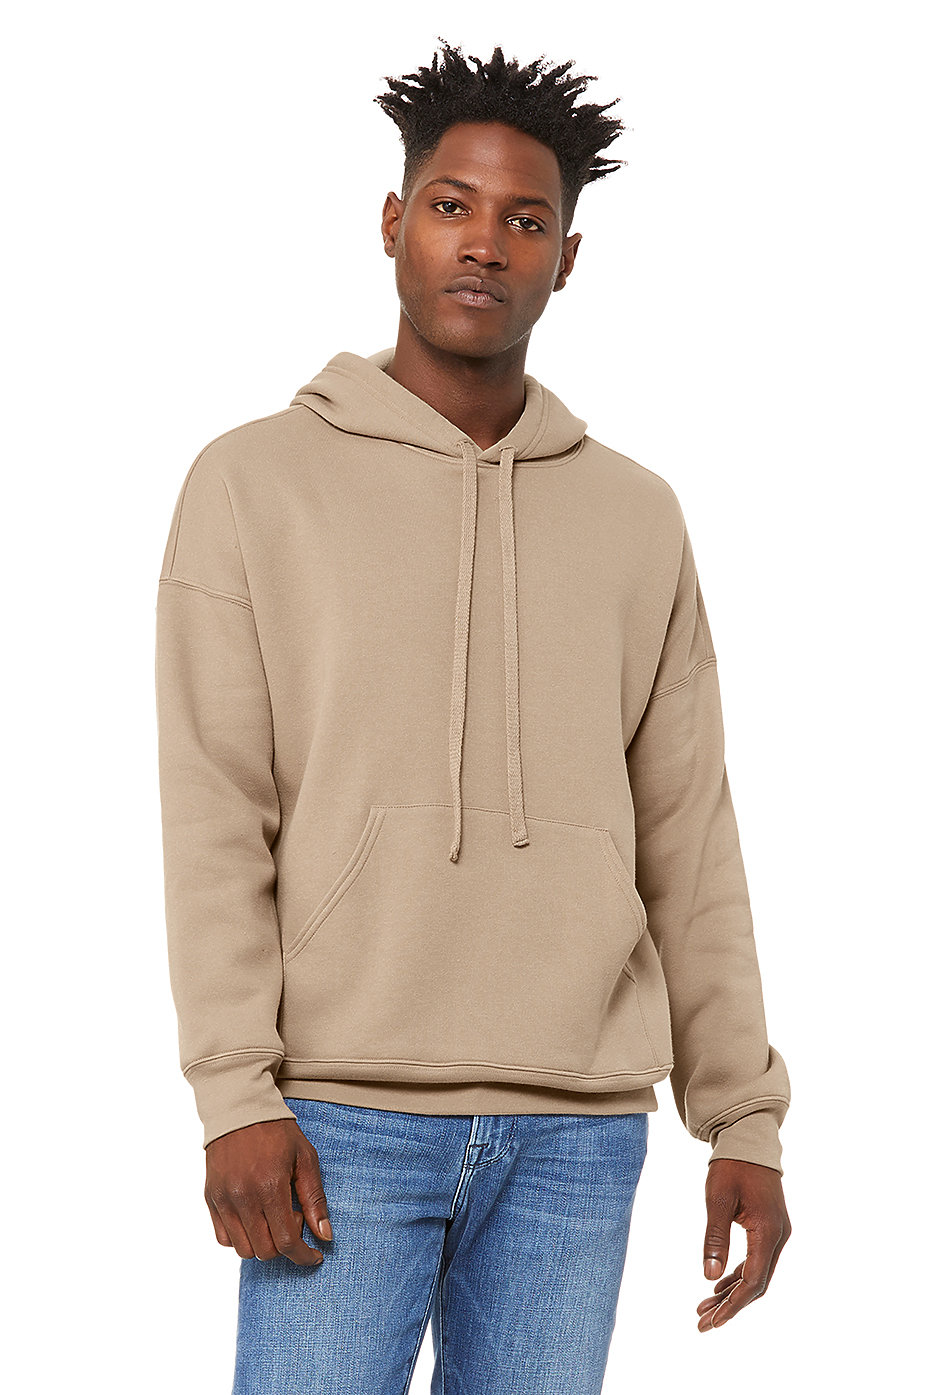 Hoodies For Men | Blank Hoodies Wholesale | Pullover Hoodies | Mens  Wholesale Clothing | BELLA+CANVAS ®